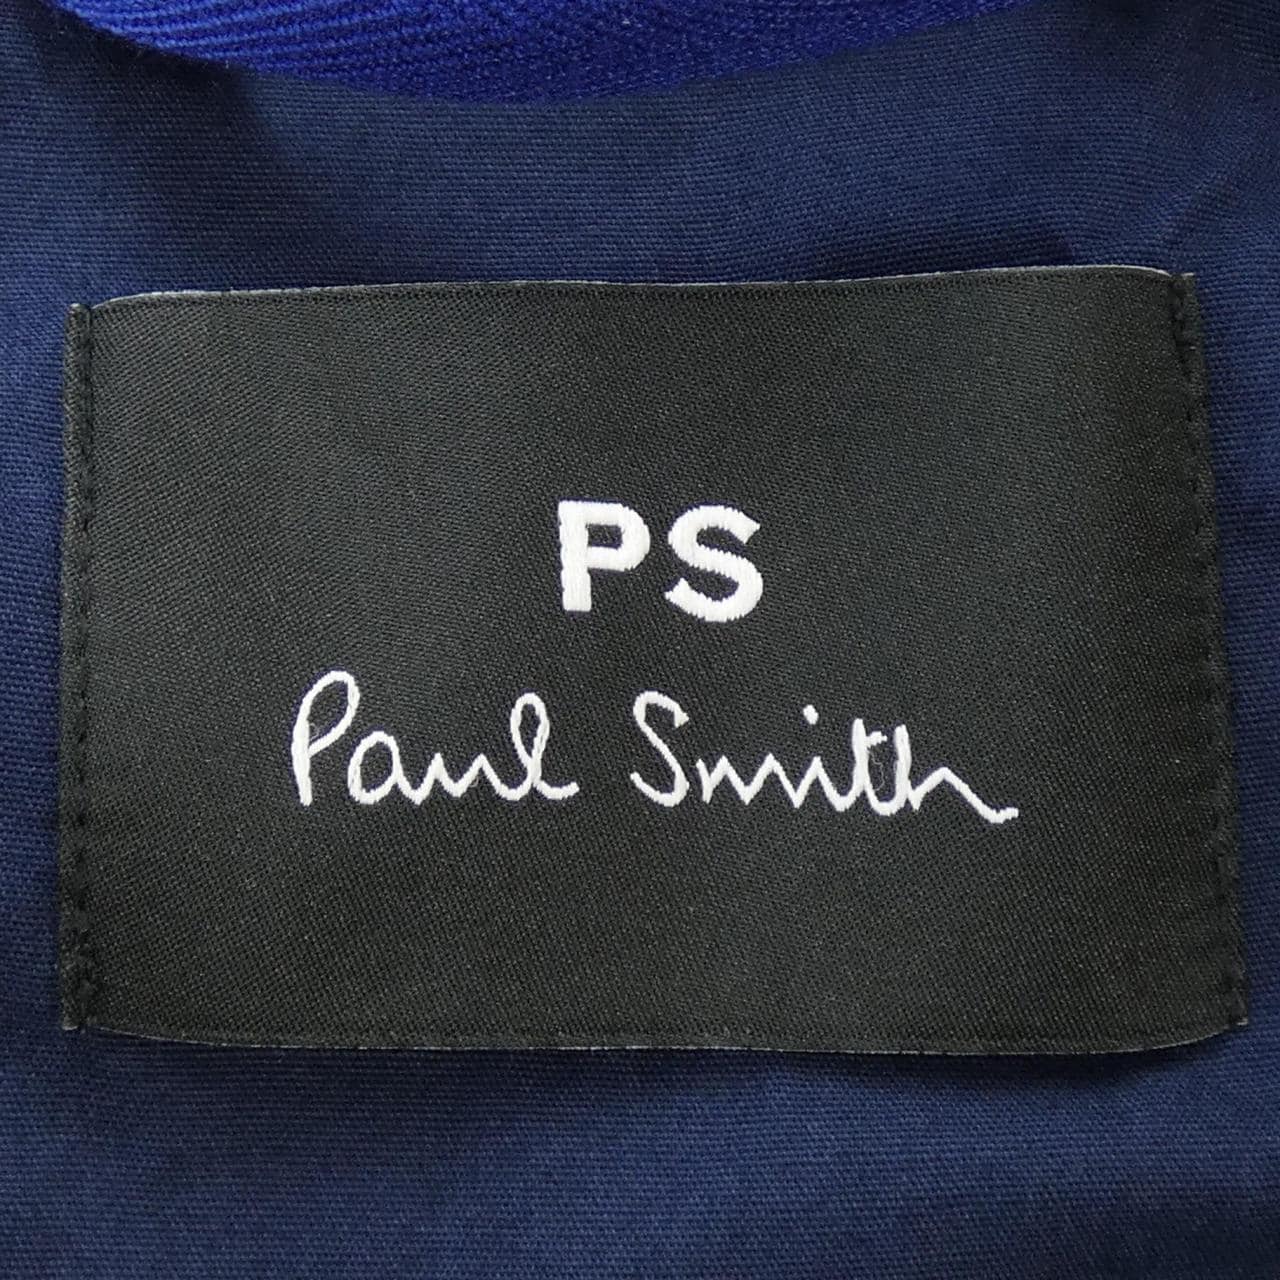 ピーエスポールスミス PS Paul Smith トップス